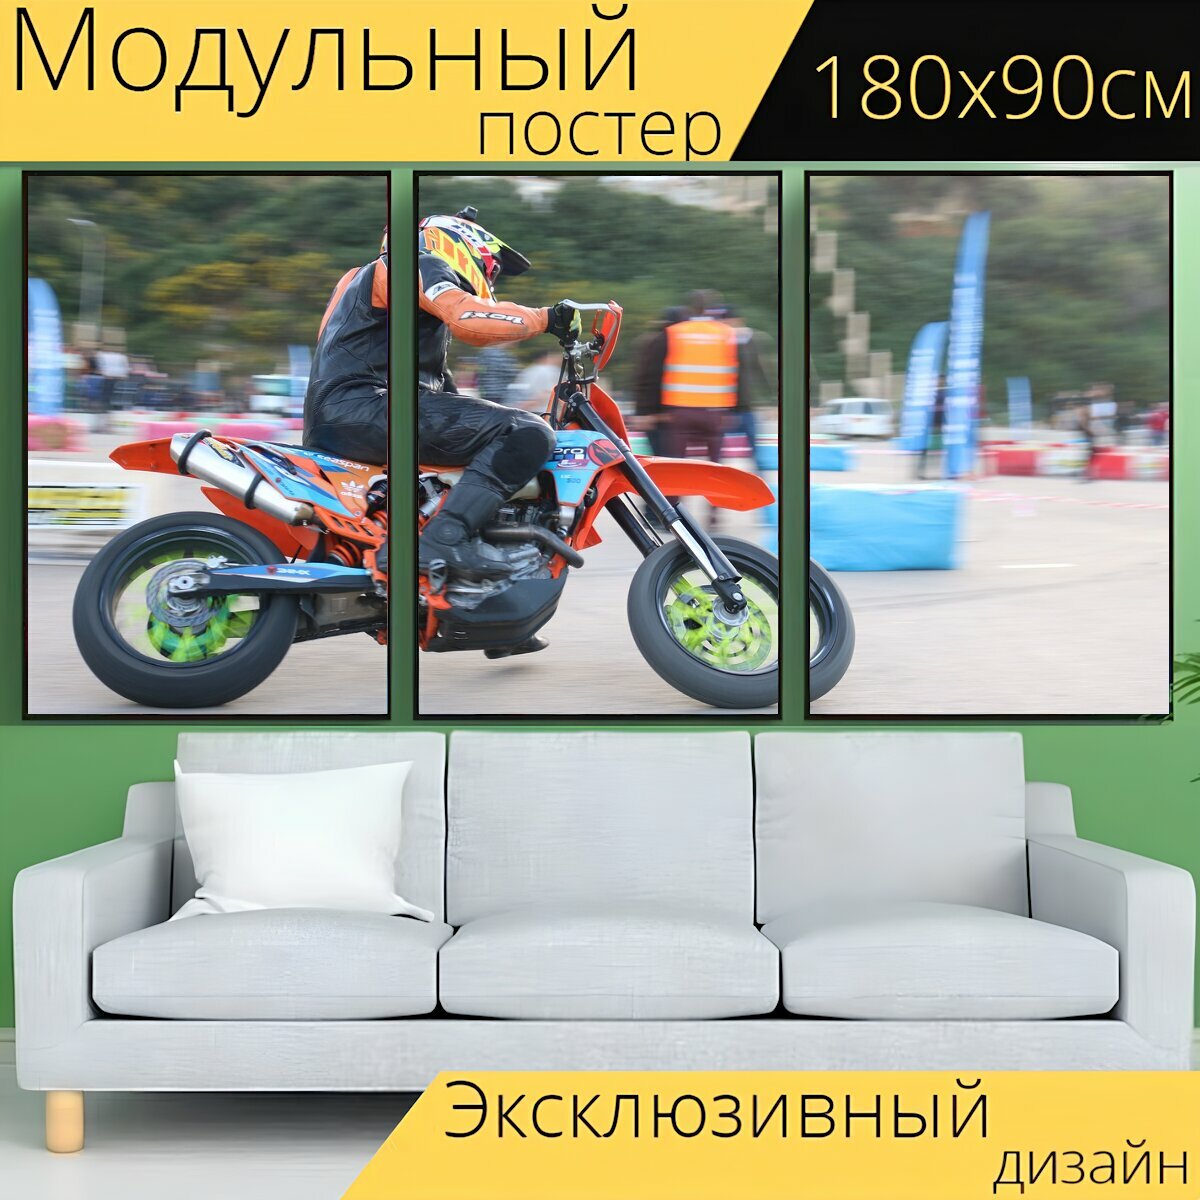 Модульный постер "Мото, мотоциклы, мотокросс" 180 x 90 см. для интерьера